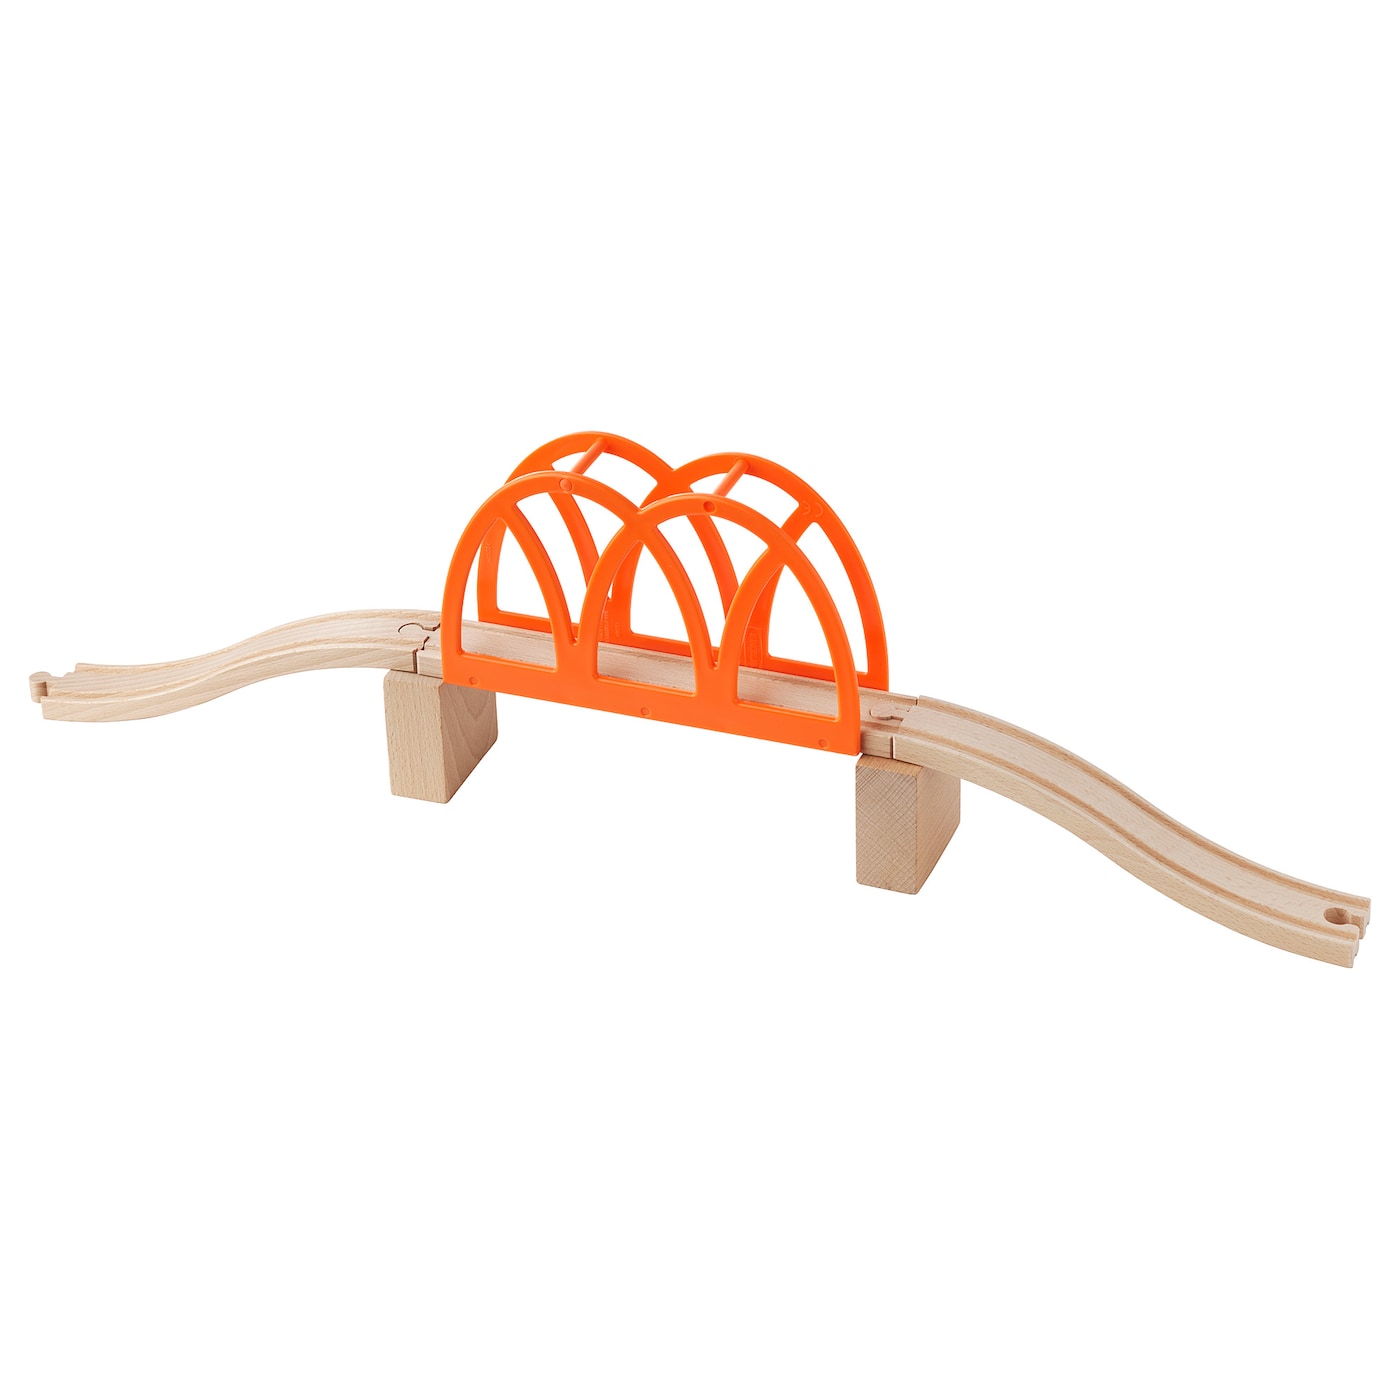 Мост для железной дороги  - LILLABO IKEA/ ЛИЛЛАБУ ИКЕА, оранжевый